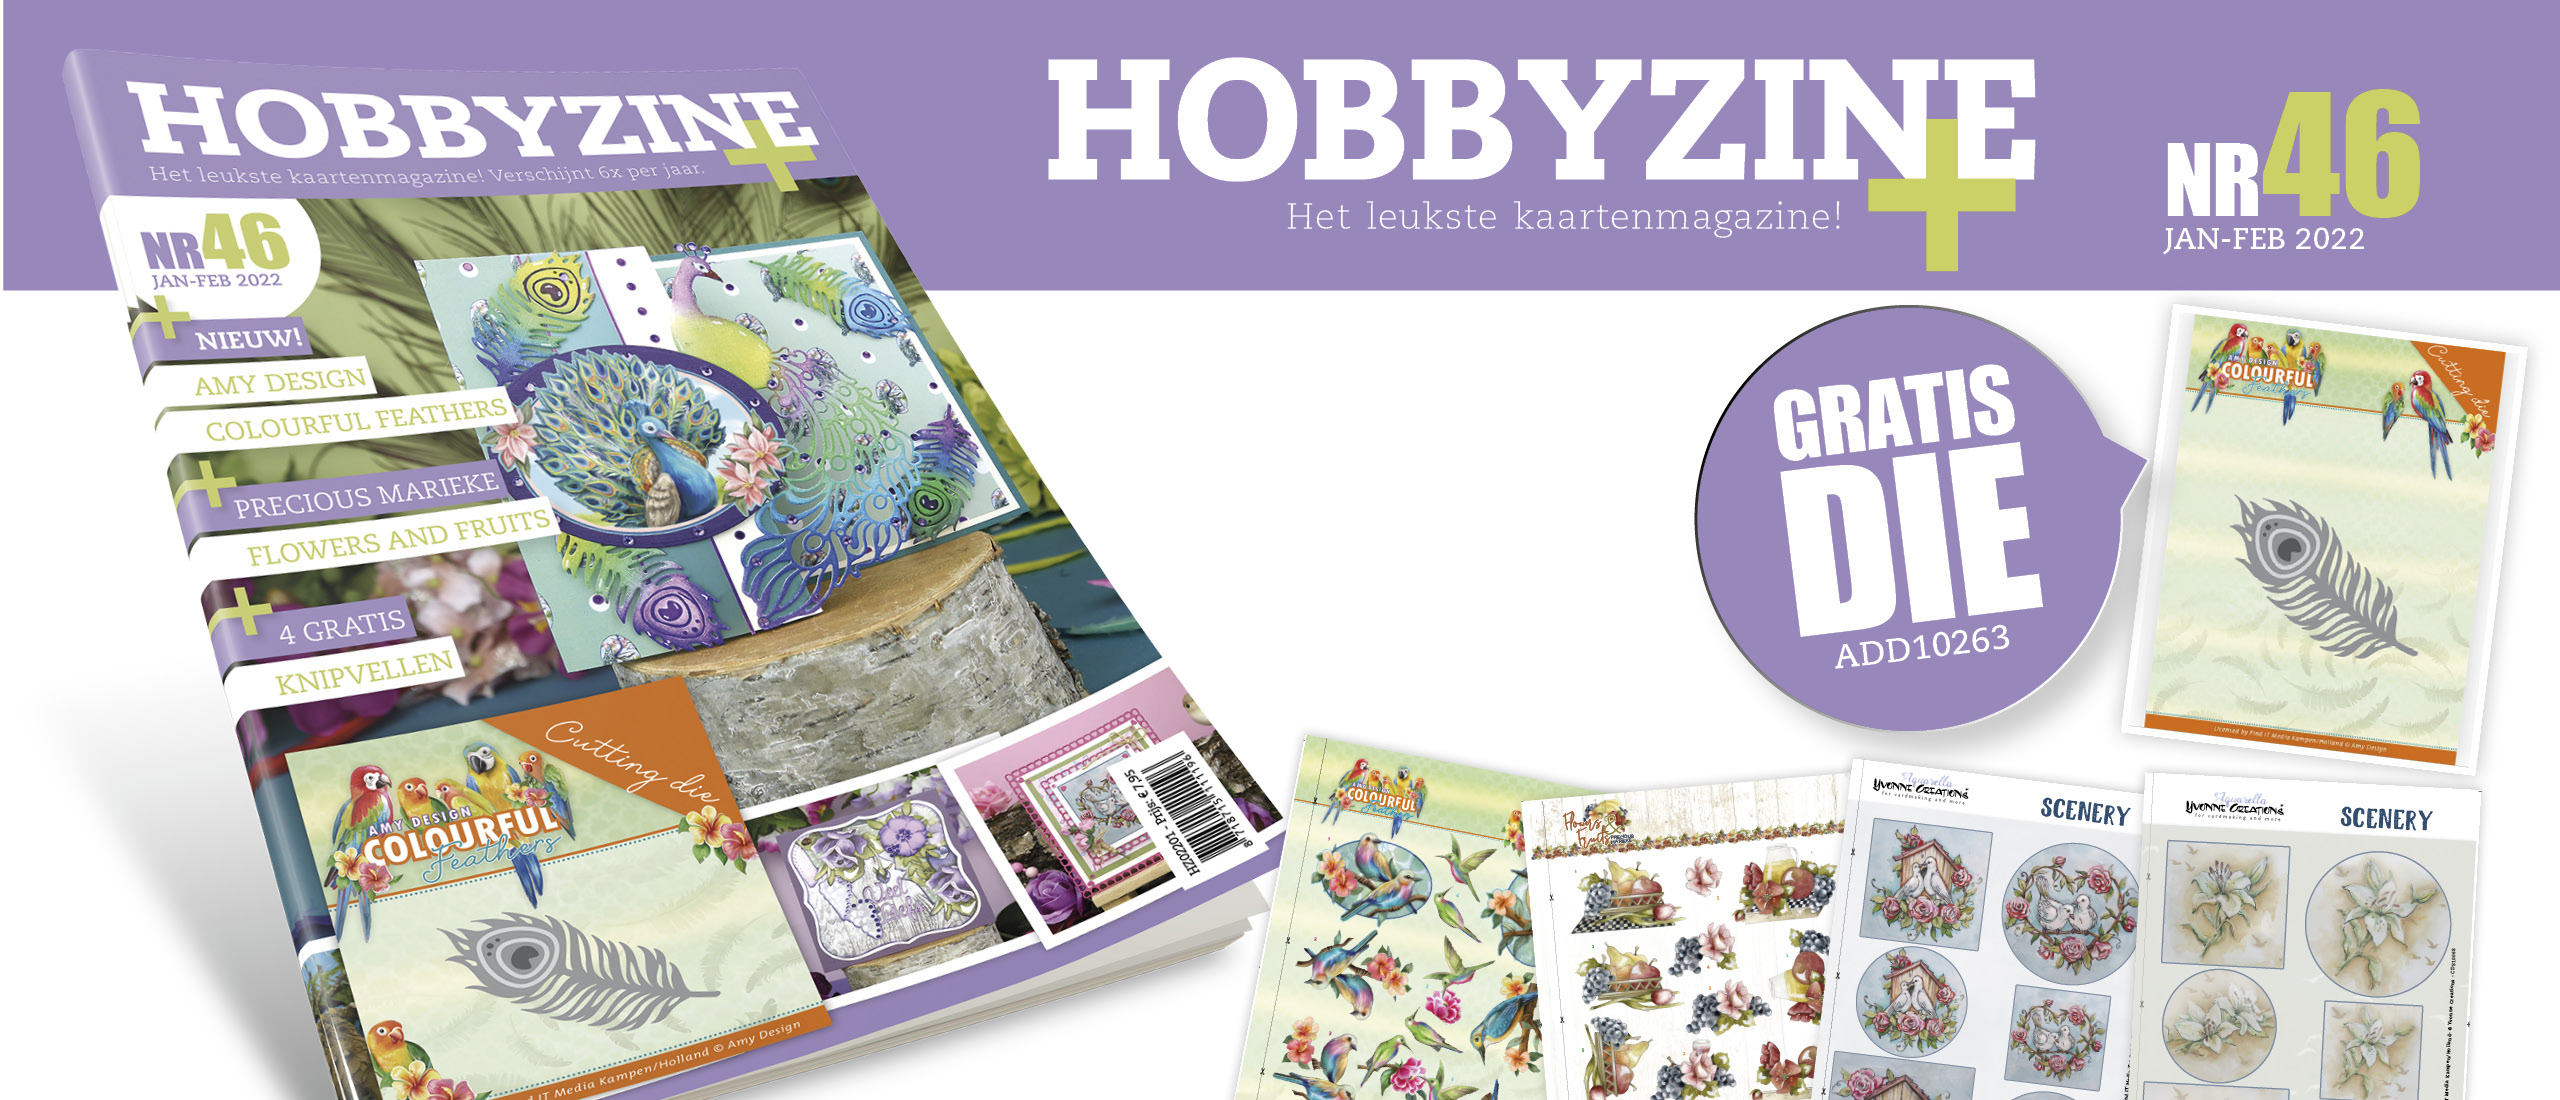 Gratis extra's bij Hobbyzine Plus 46: een gratis snijmal!